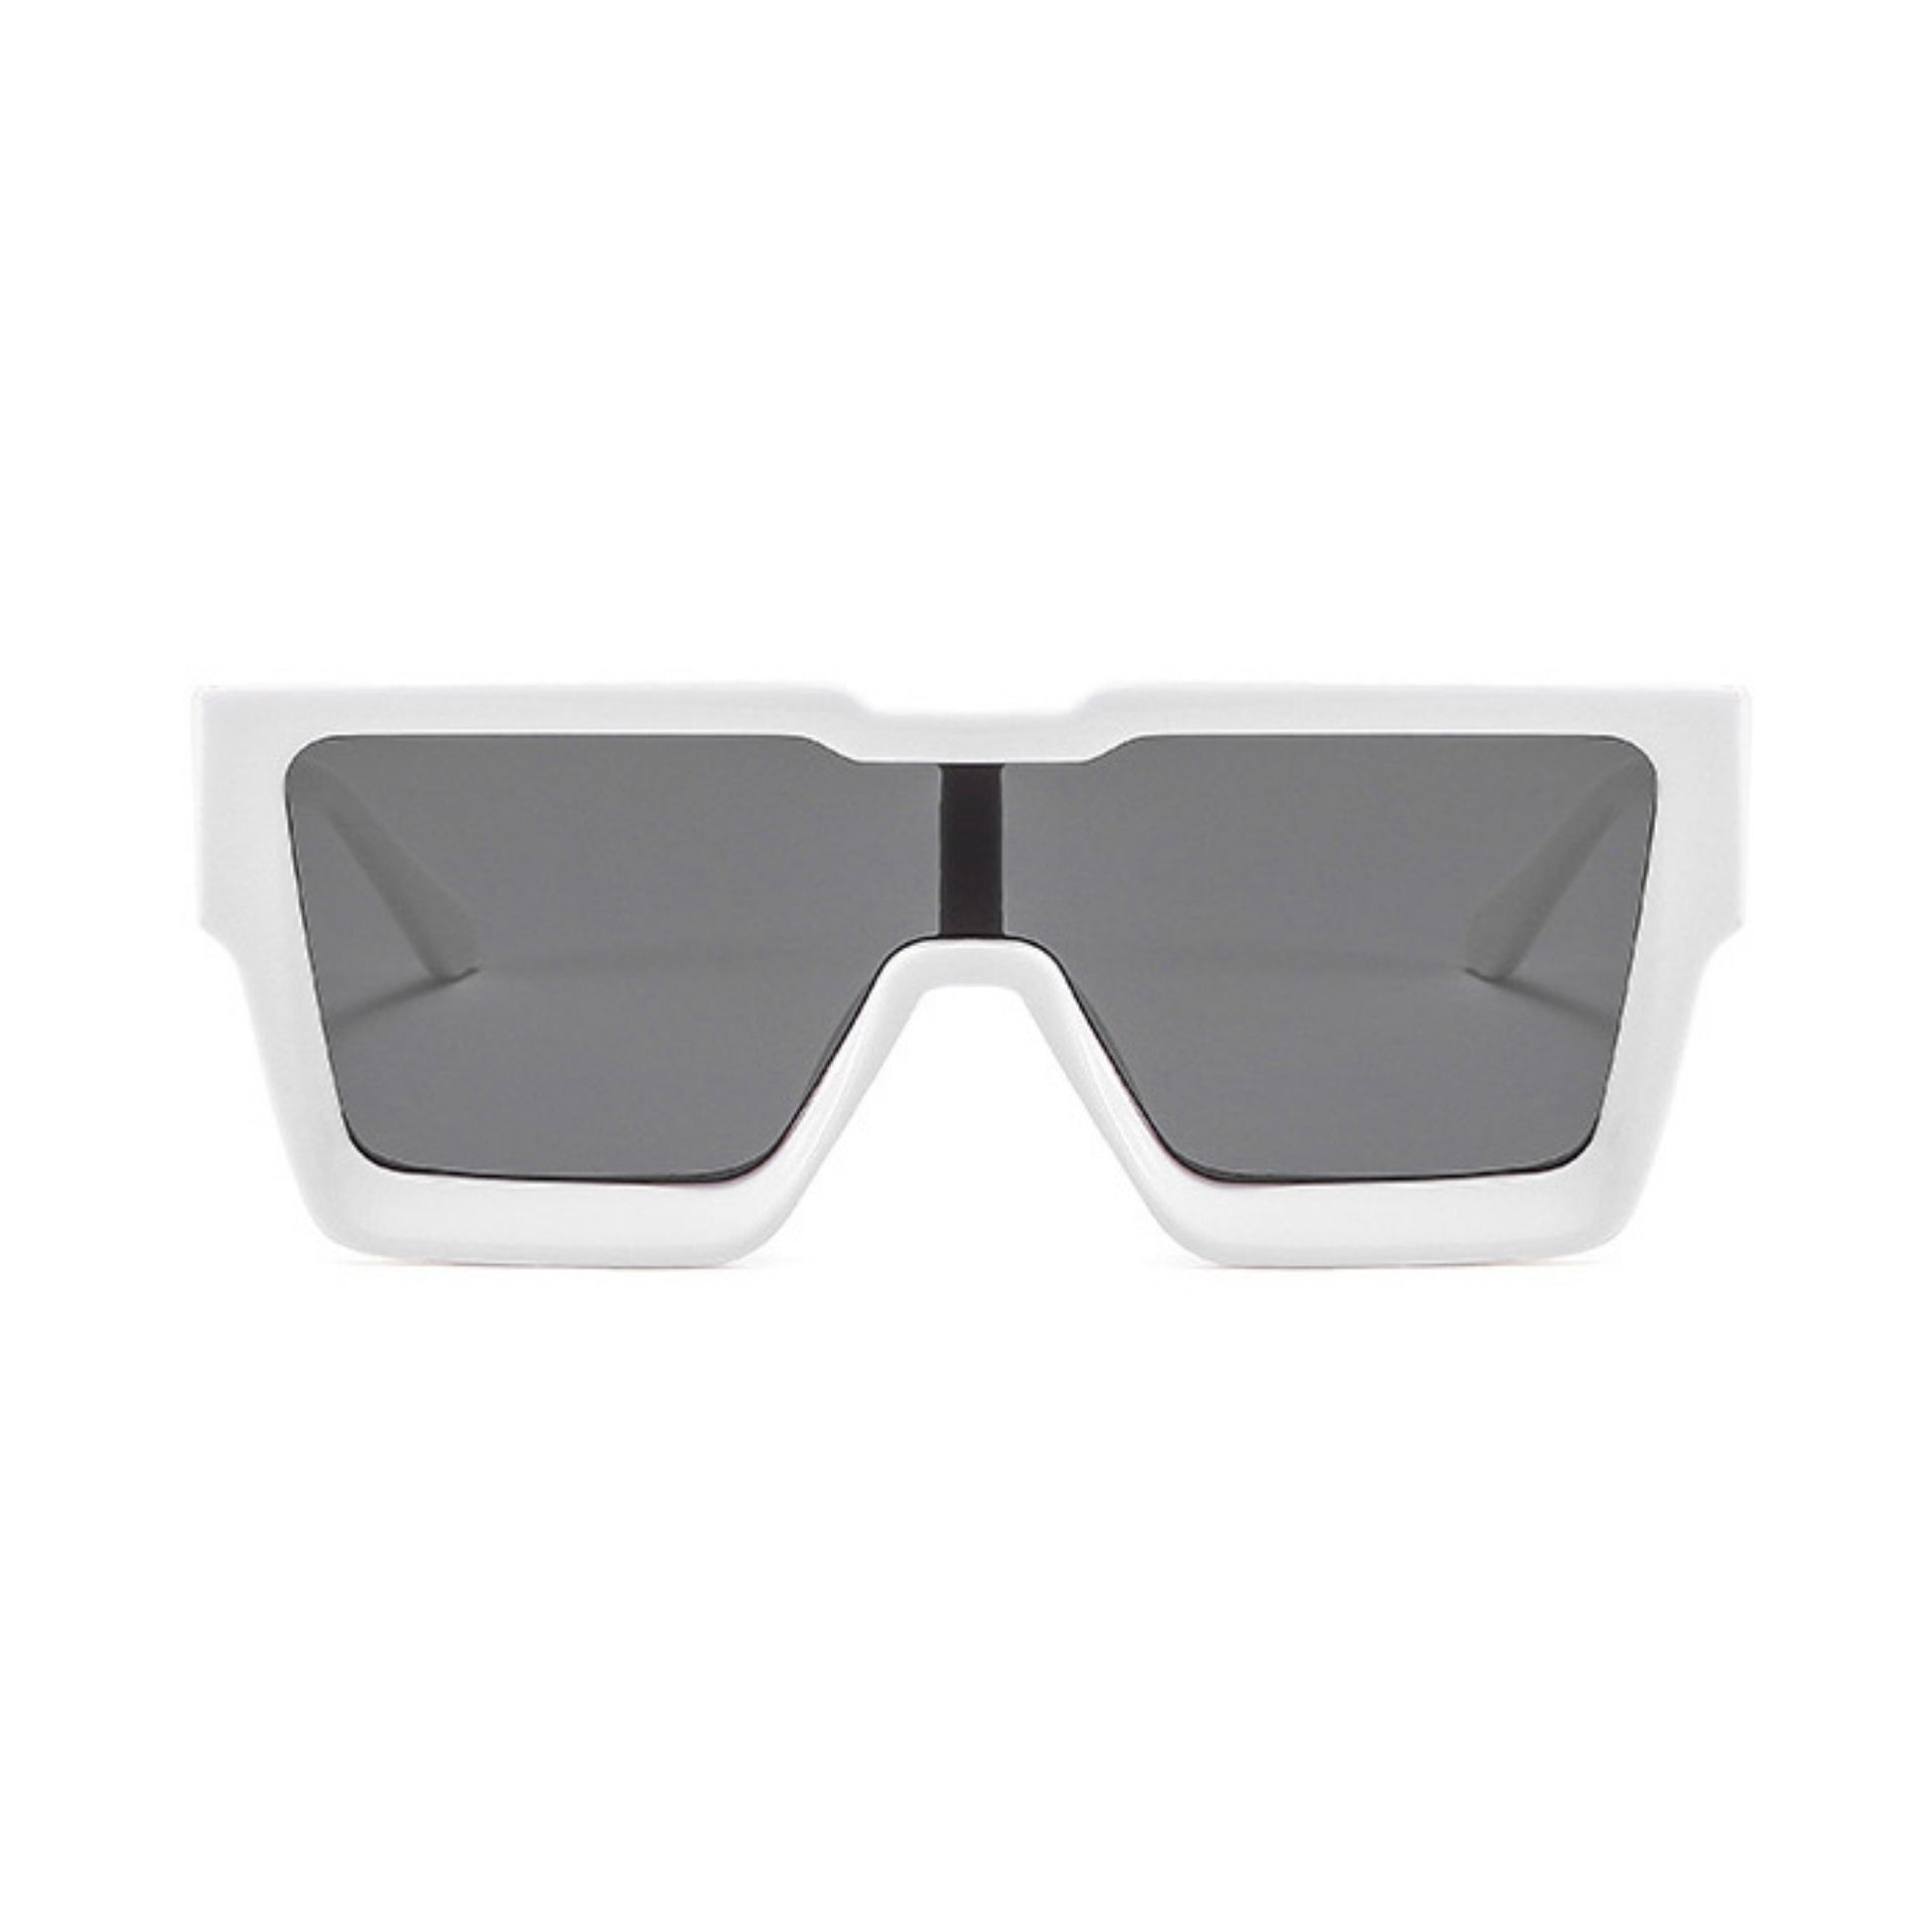 Γυαλιά ηλίου Toronto (Μάσκα) από την Exposure Sunglasses με προστασία UV400 με άσπρο σκελετό και μαύρο φακό.